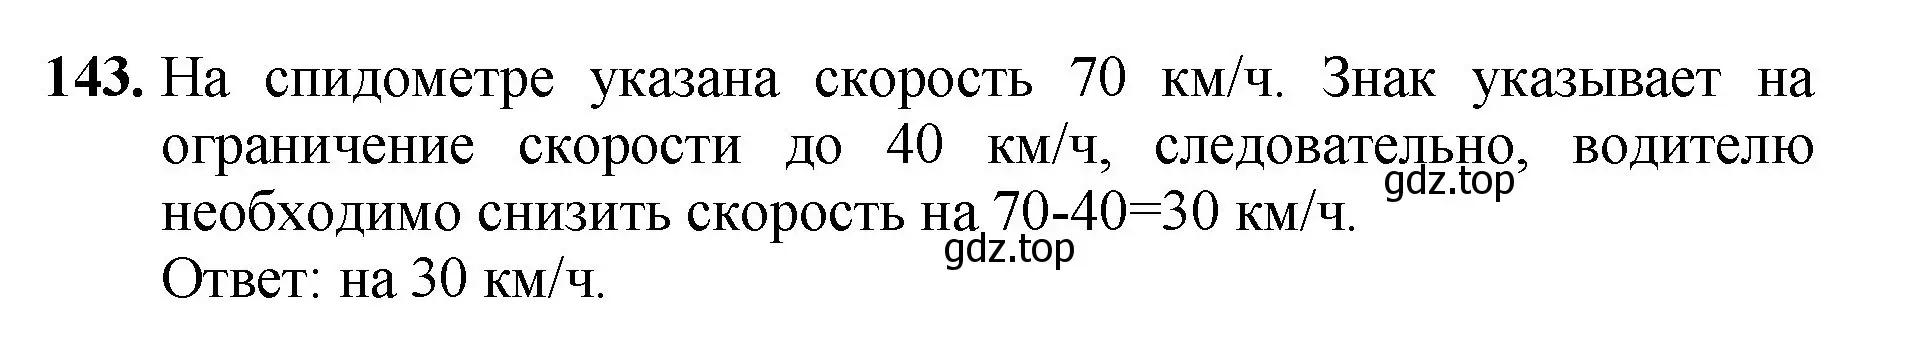 Решение номер 143 (страница 43) гдз по математике 5 класс Мерзляк, Полонский, учебник